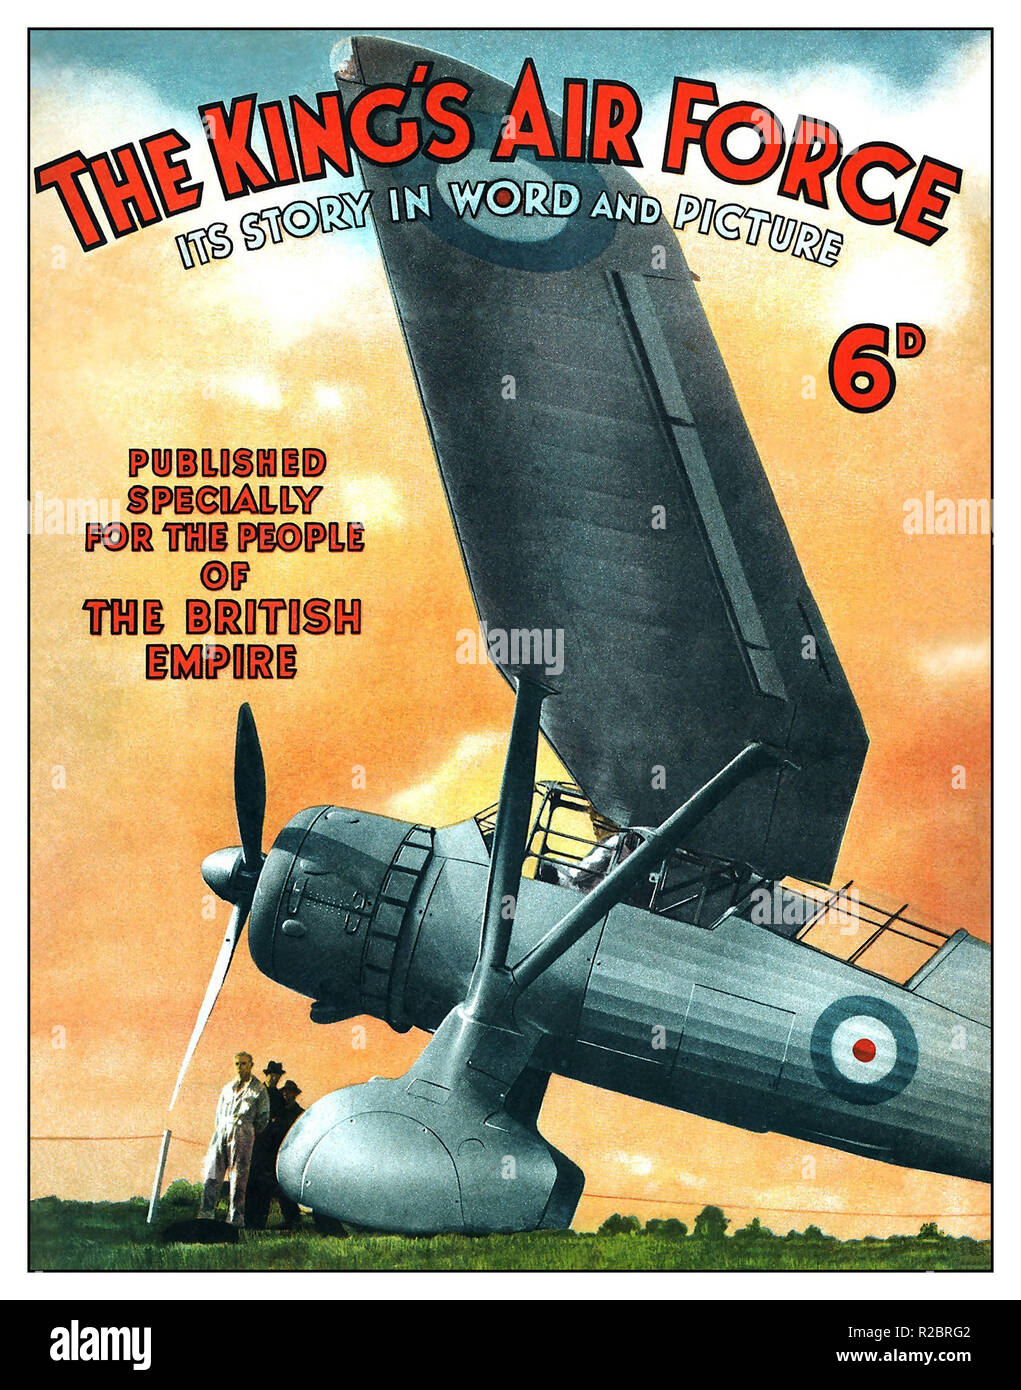 1939 Le Roi de la Force aérienne. Son histoire en Word et photo pour les gens de l'Empire britannique avec un Westland Lysander Mk 1 avion avec cocardes RAF Banque D'Images